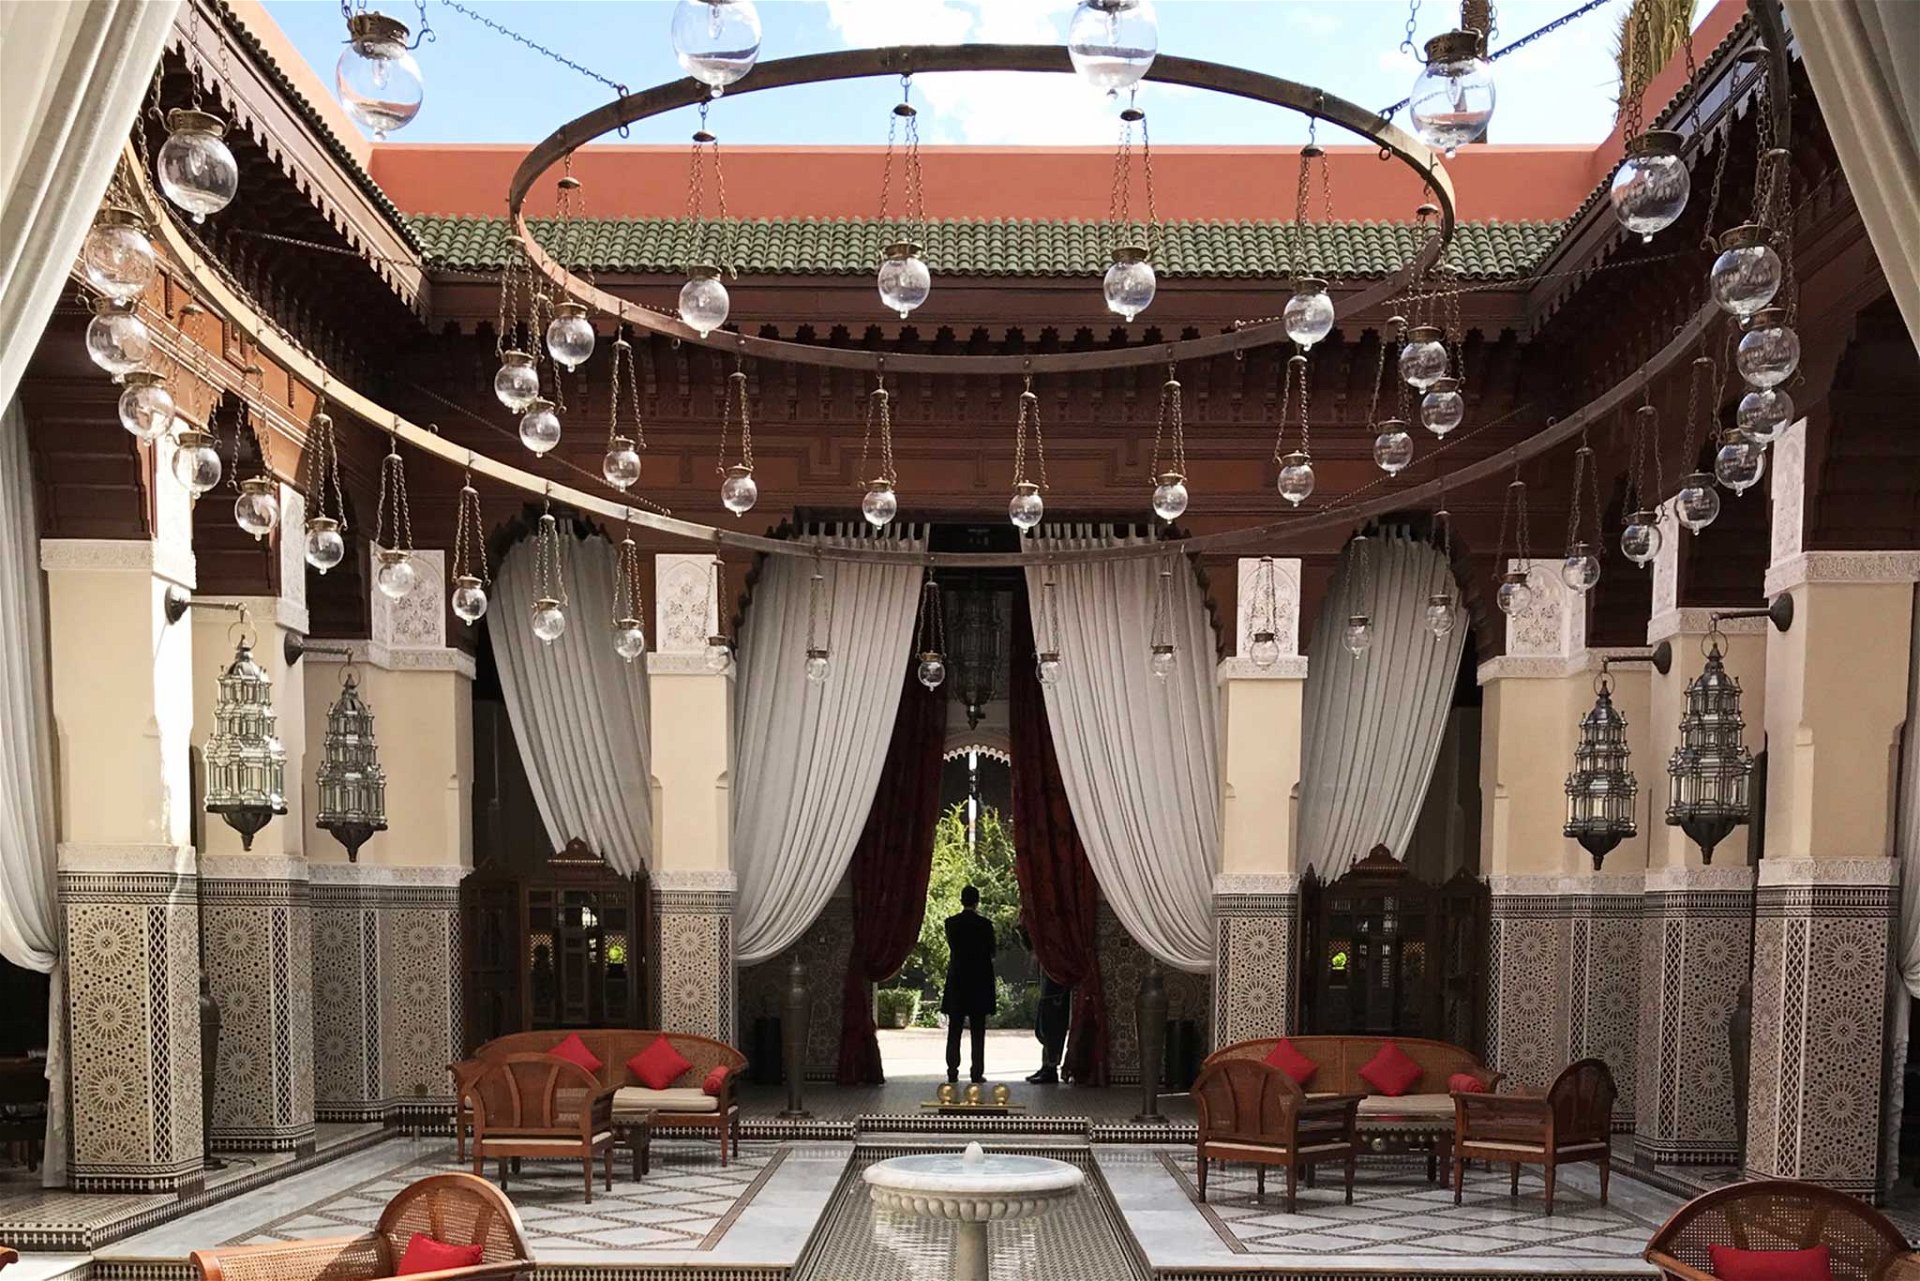 Mit dem »Royal Mansour« Hotel schuf der marokkanische König Mohammed VI eines der glamourösesten Luxushotels weltweit. 